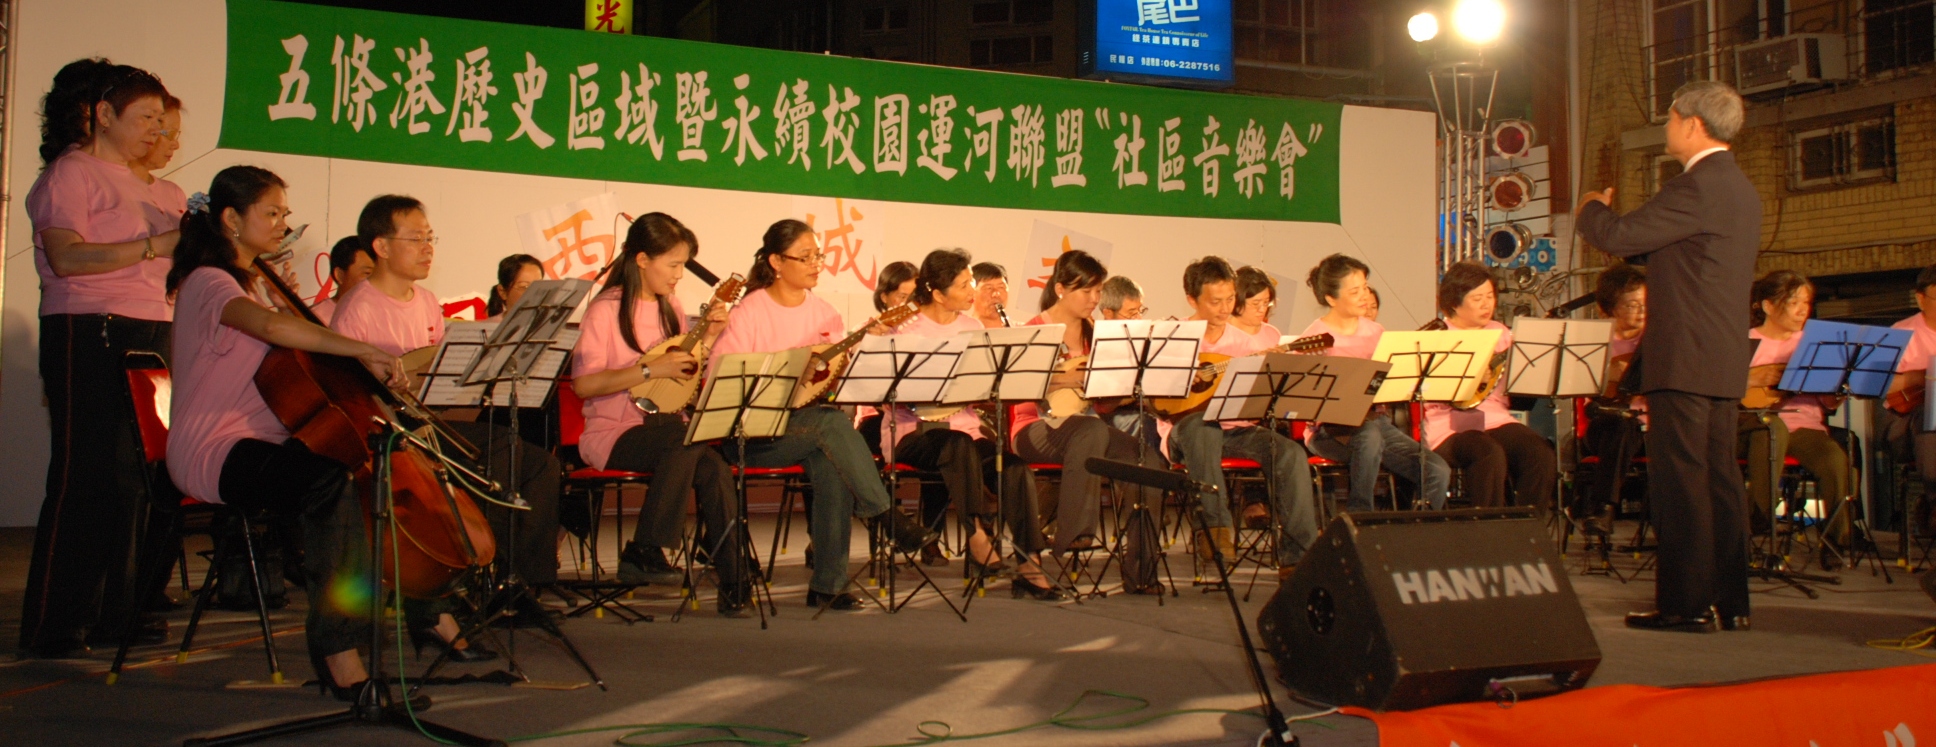 台南市五條港發展協會圖片